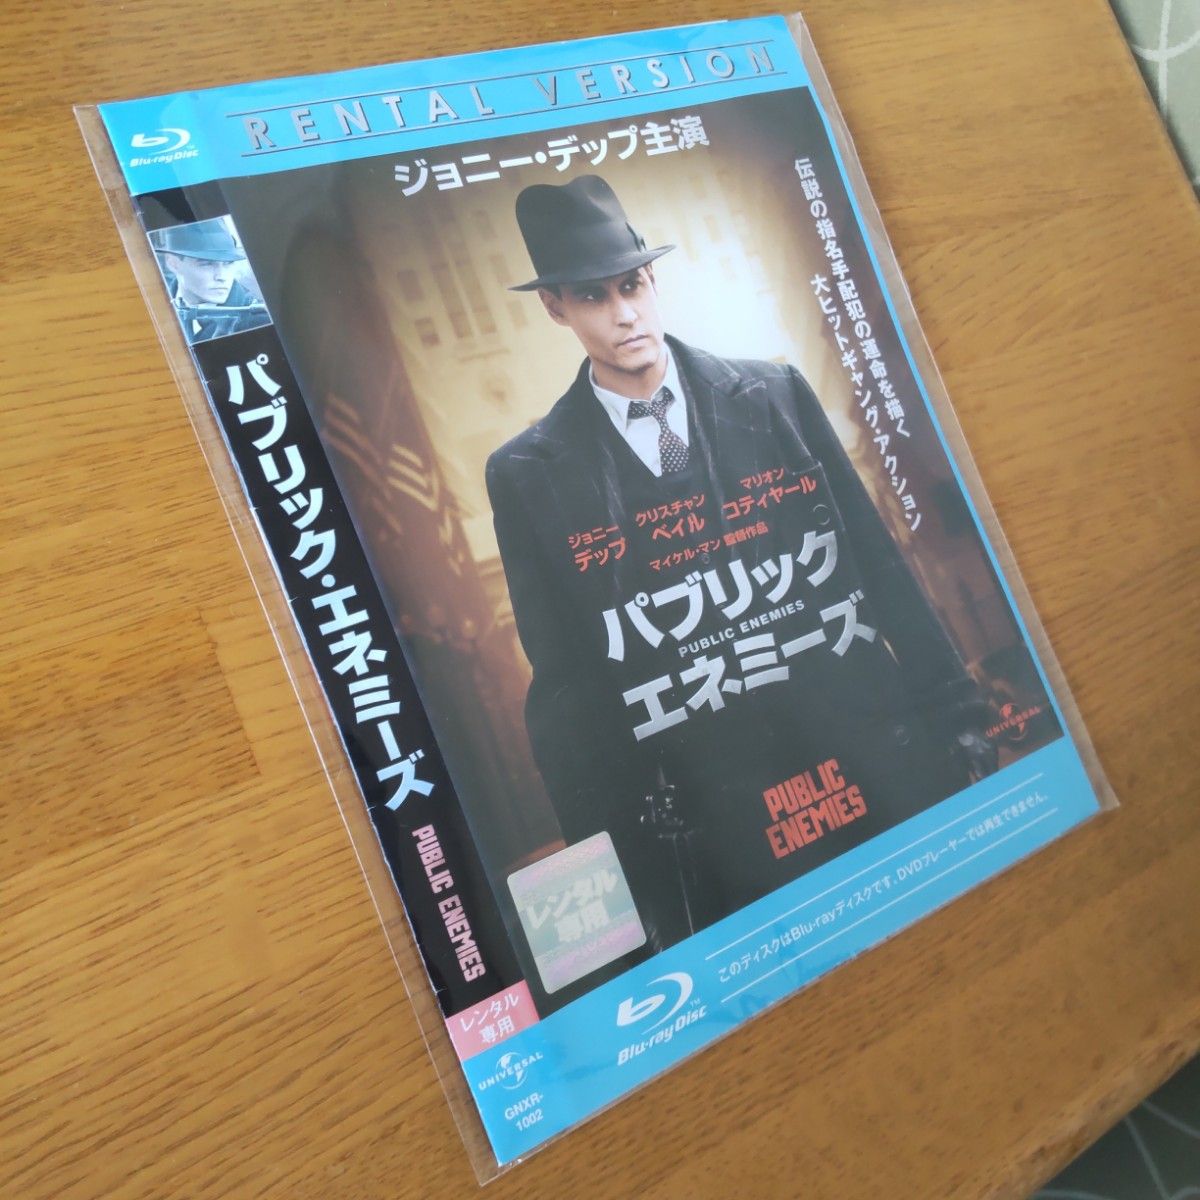 【中古・レンタルアップ・値下】パブリック・エネミーズ('09米) Blu-ray